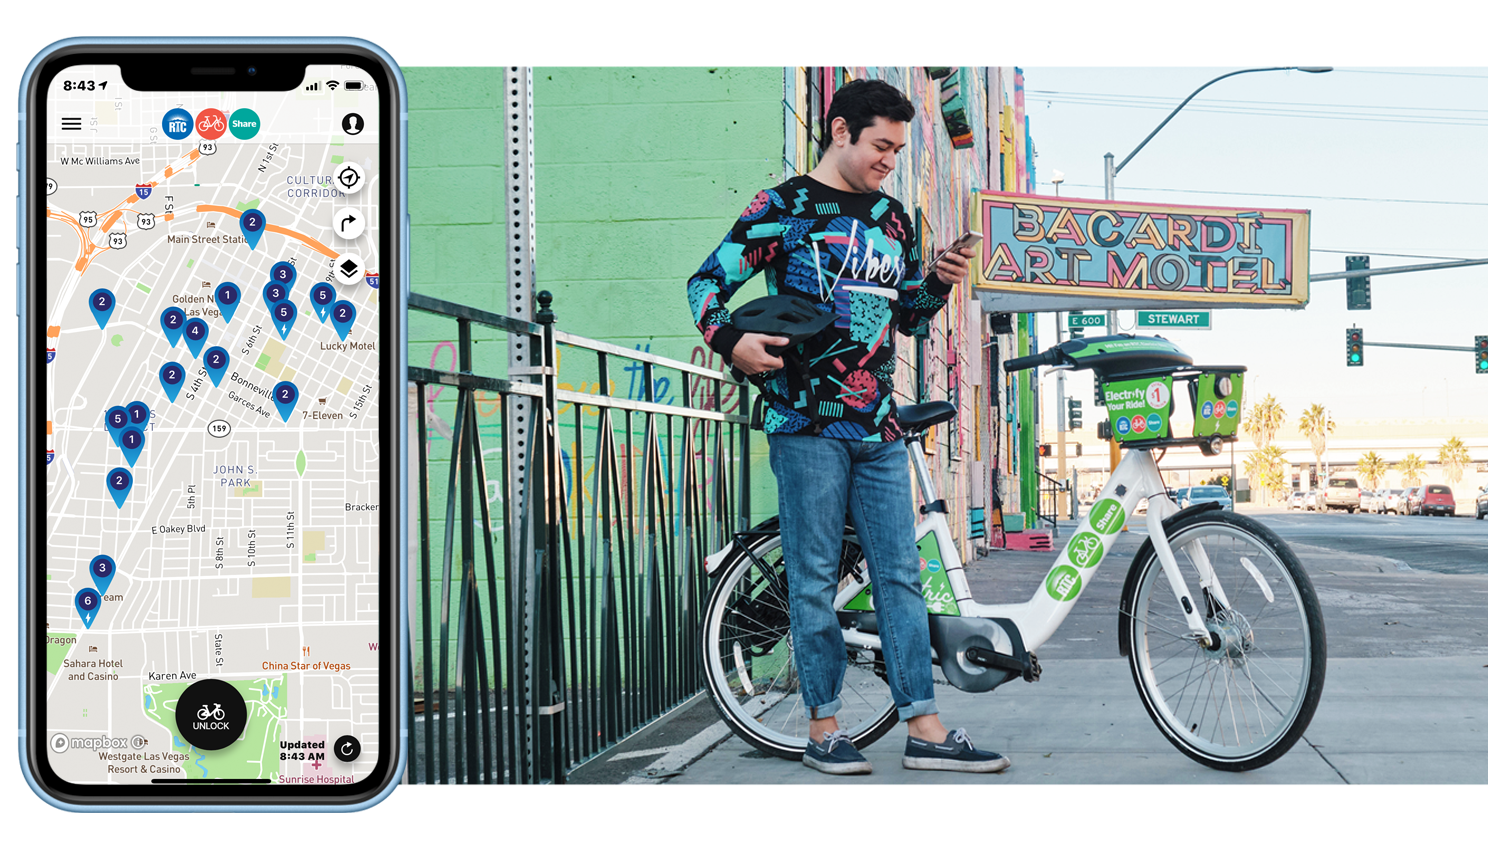 Bike sharing system, bike sharing app